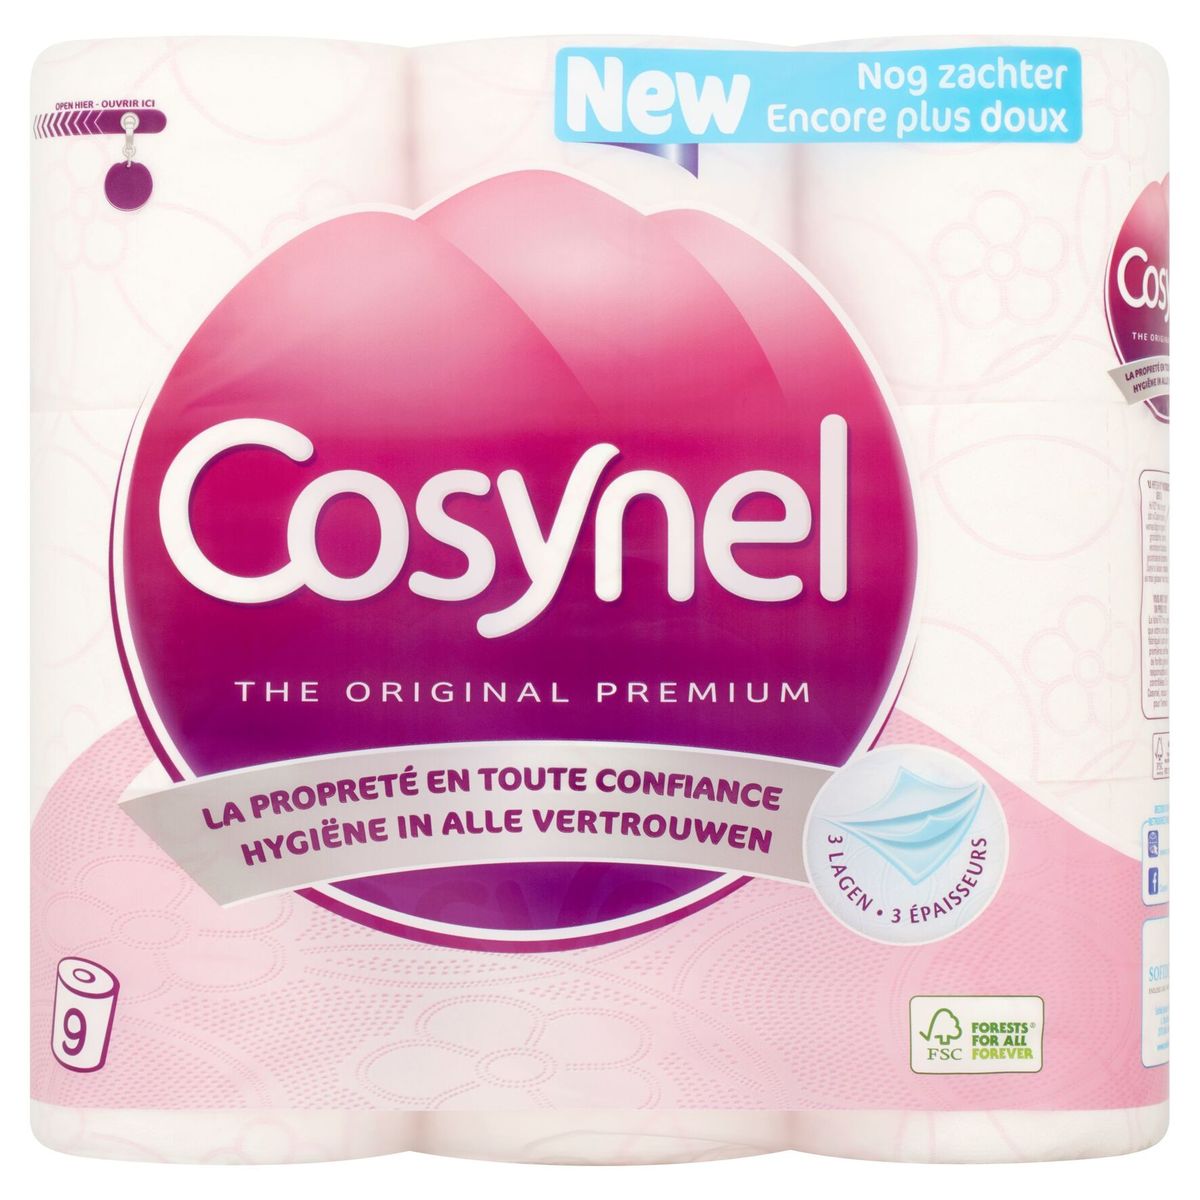 Cosynel The Original Premium Rose 3 Plis Papier Toilette 9 Rouleaux